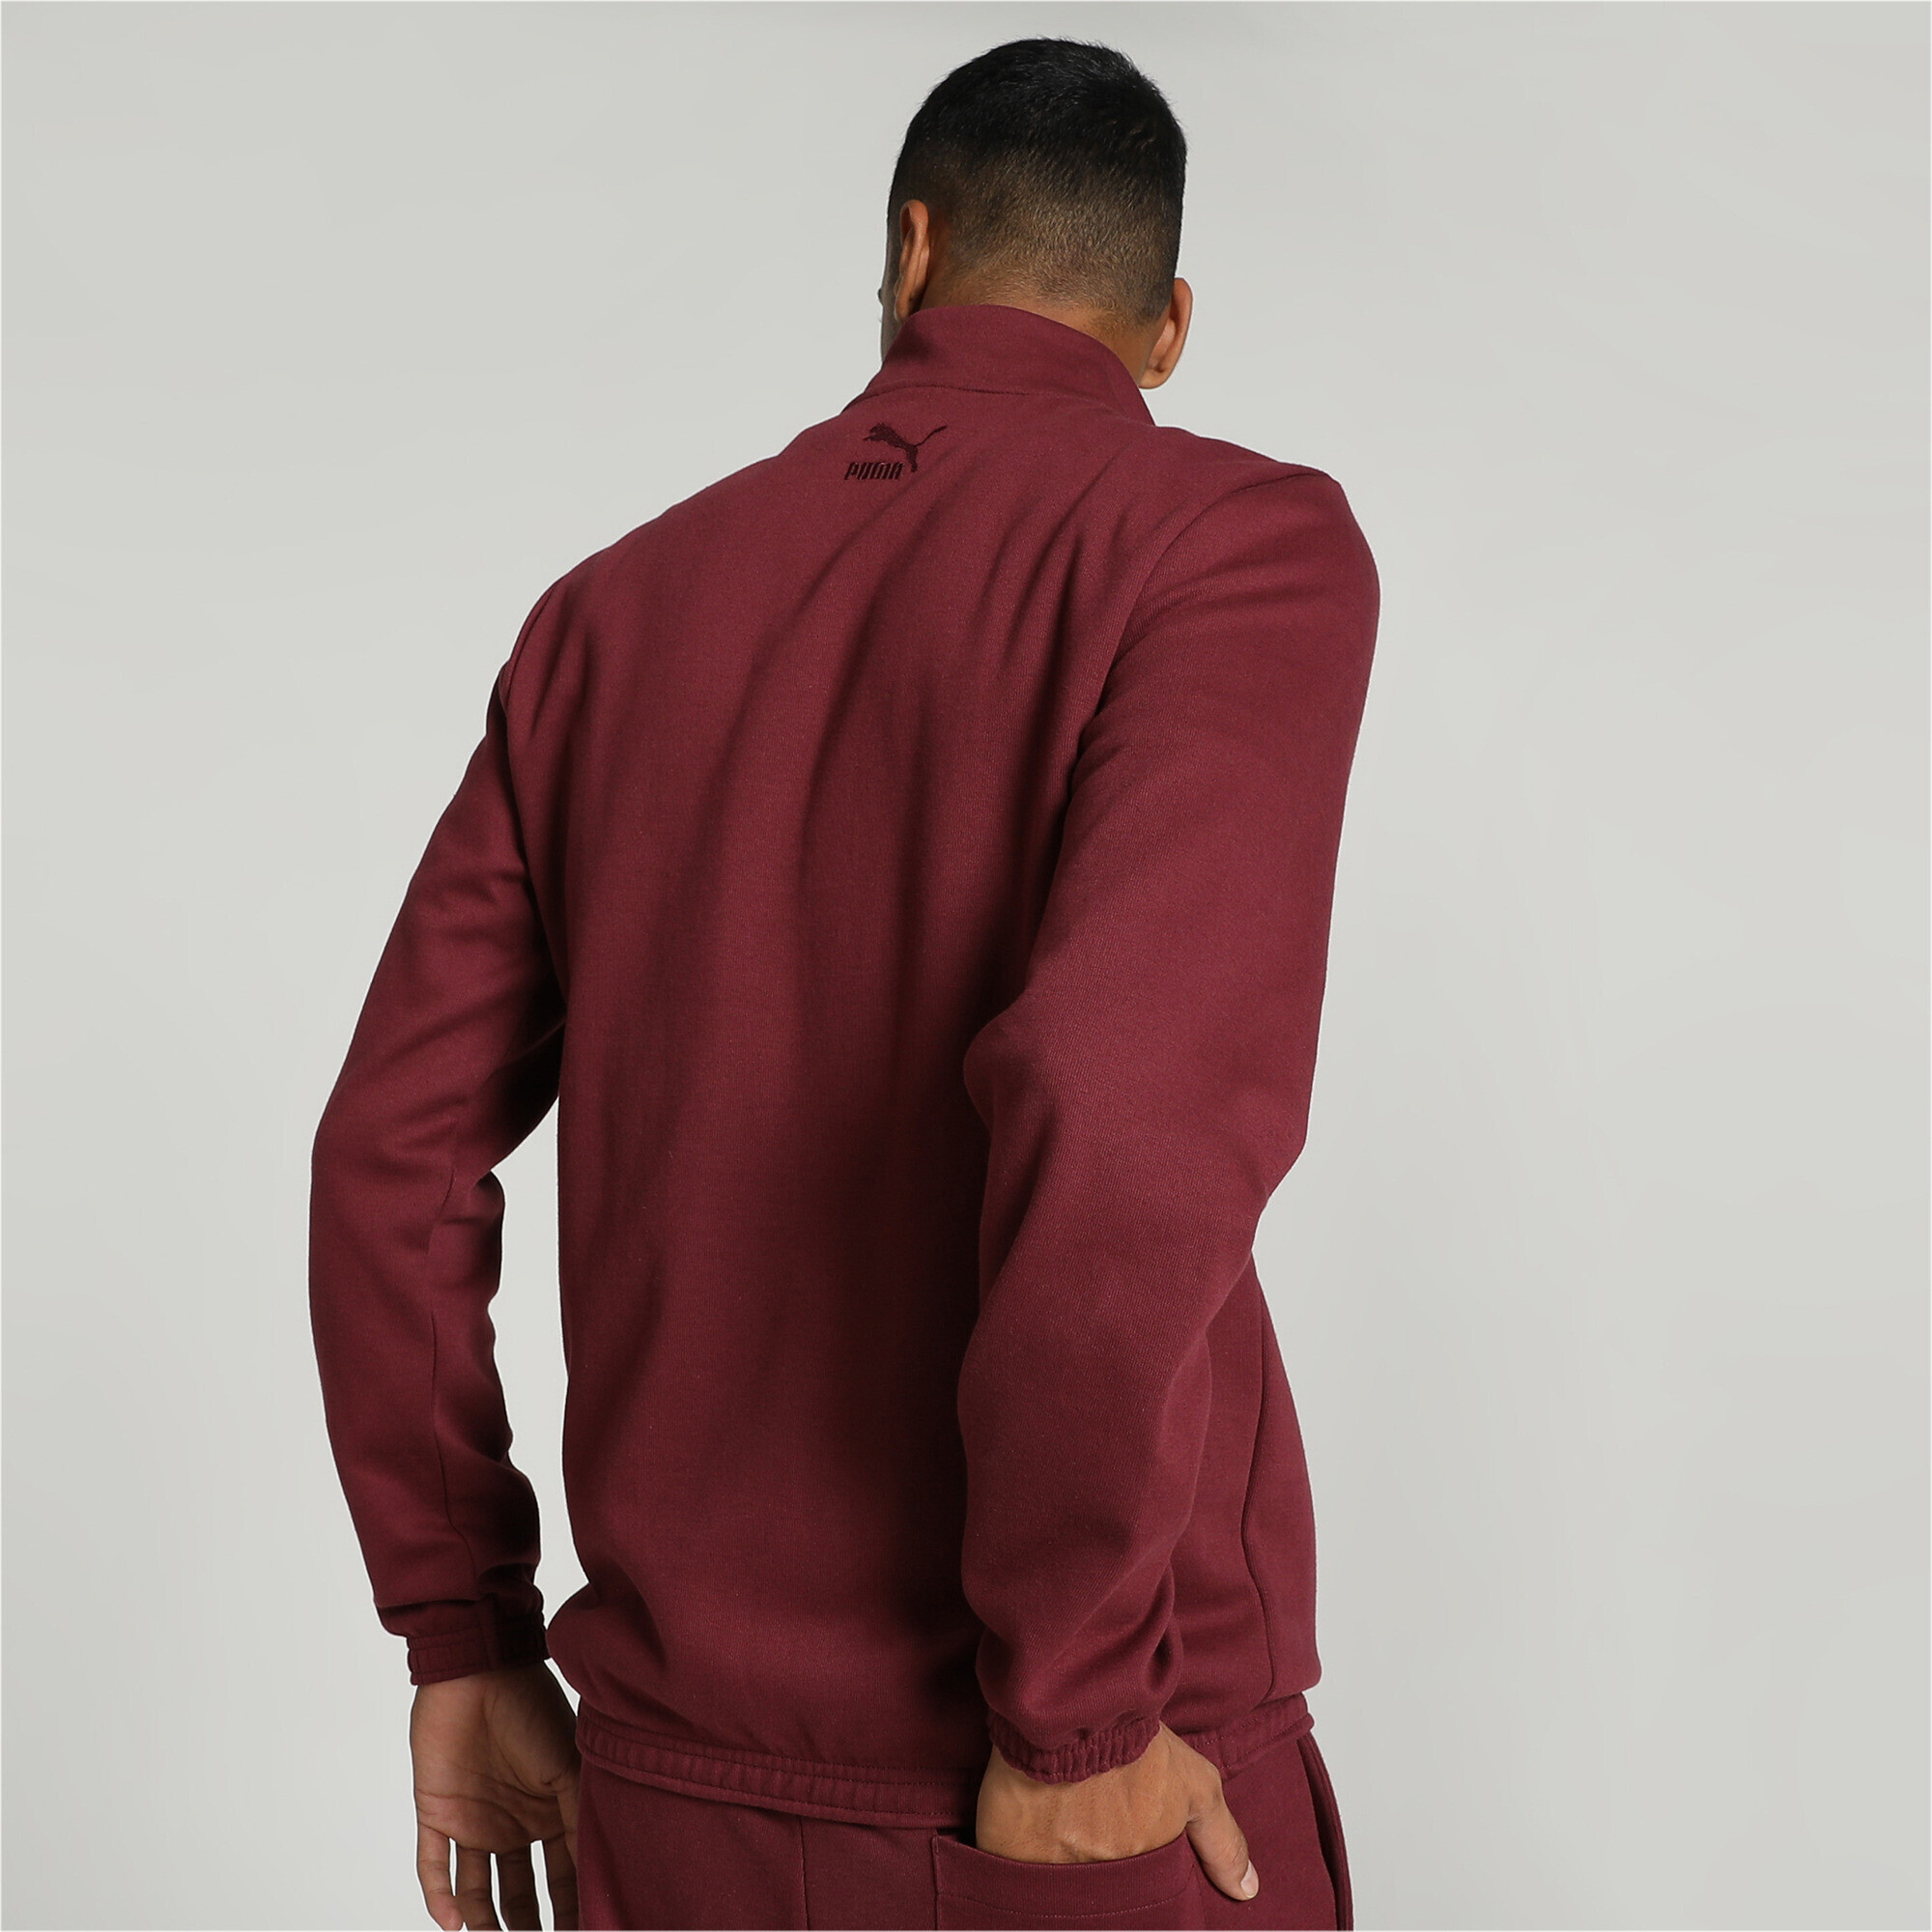 Men's PUMA X One8 Half Zip Jacket In 120 - Red, Size XL